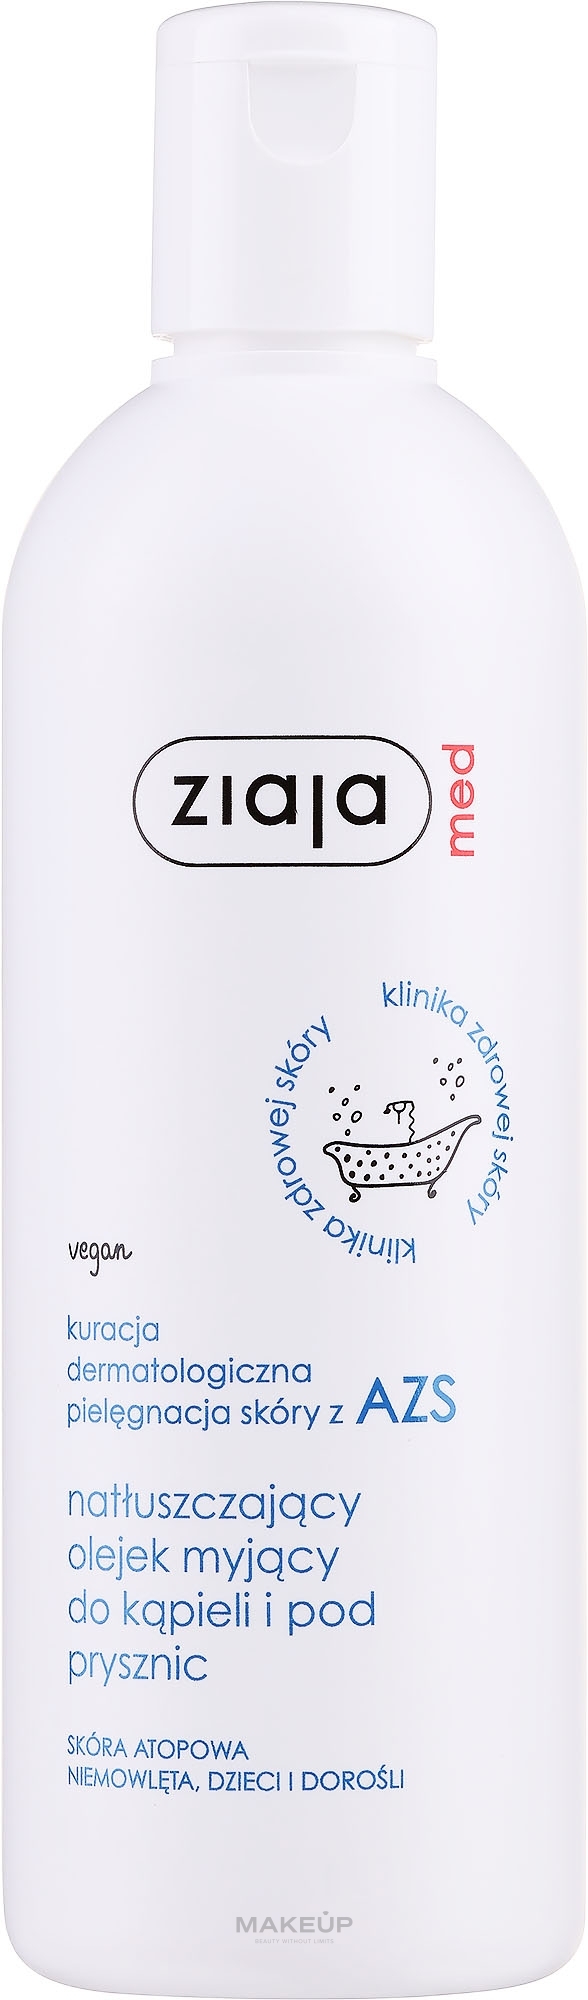 Natłuszczający olejek myjący do ciała - Ziaja Med Kuracja dermatologiczna AZS — Zdjęcie 270 ml